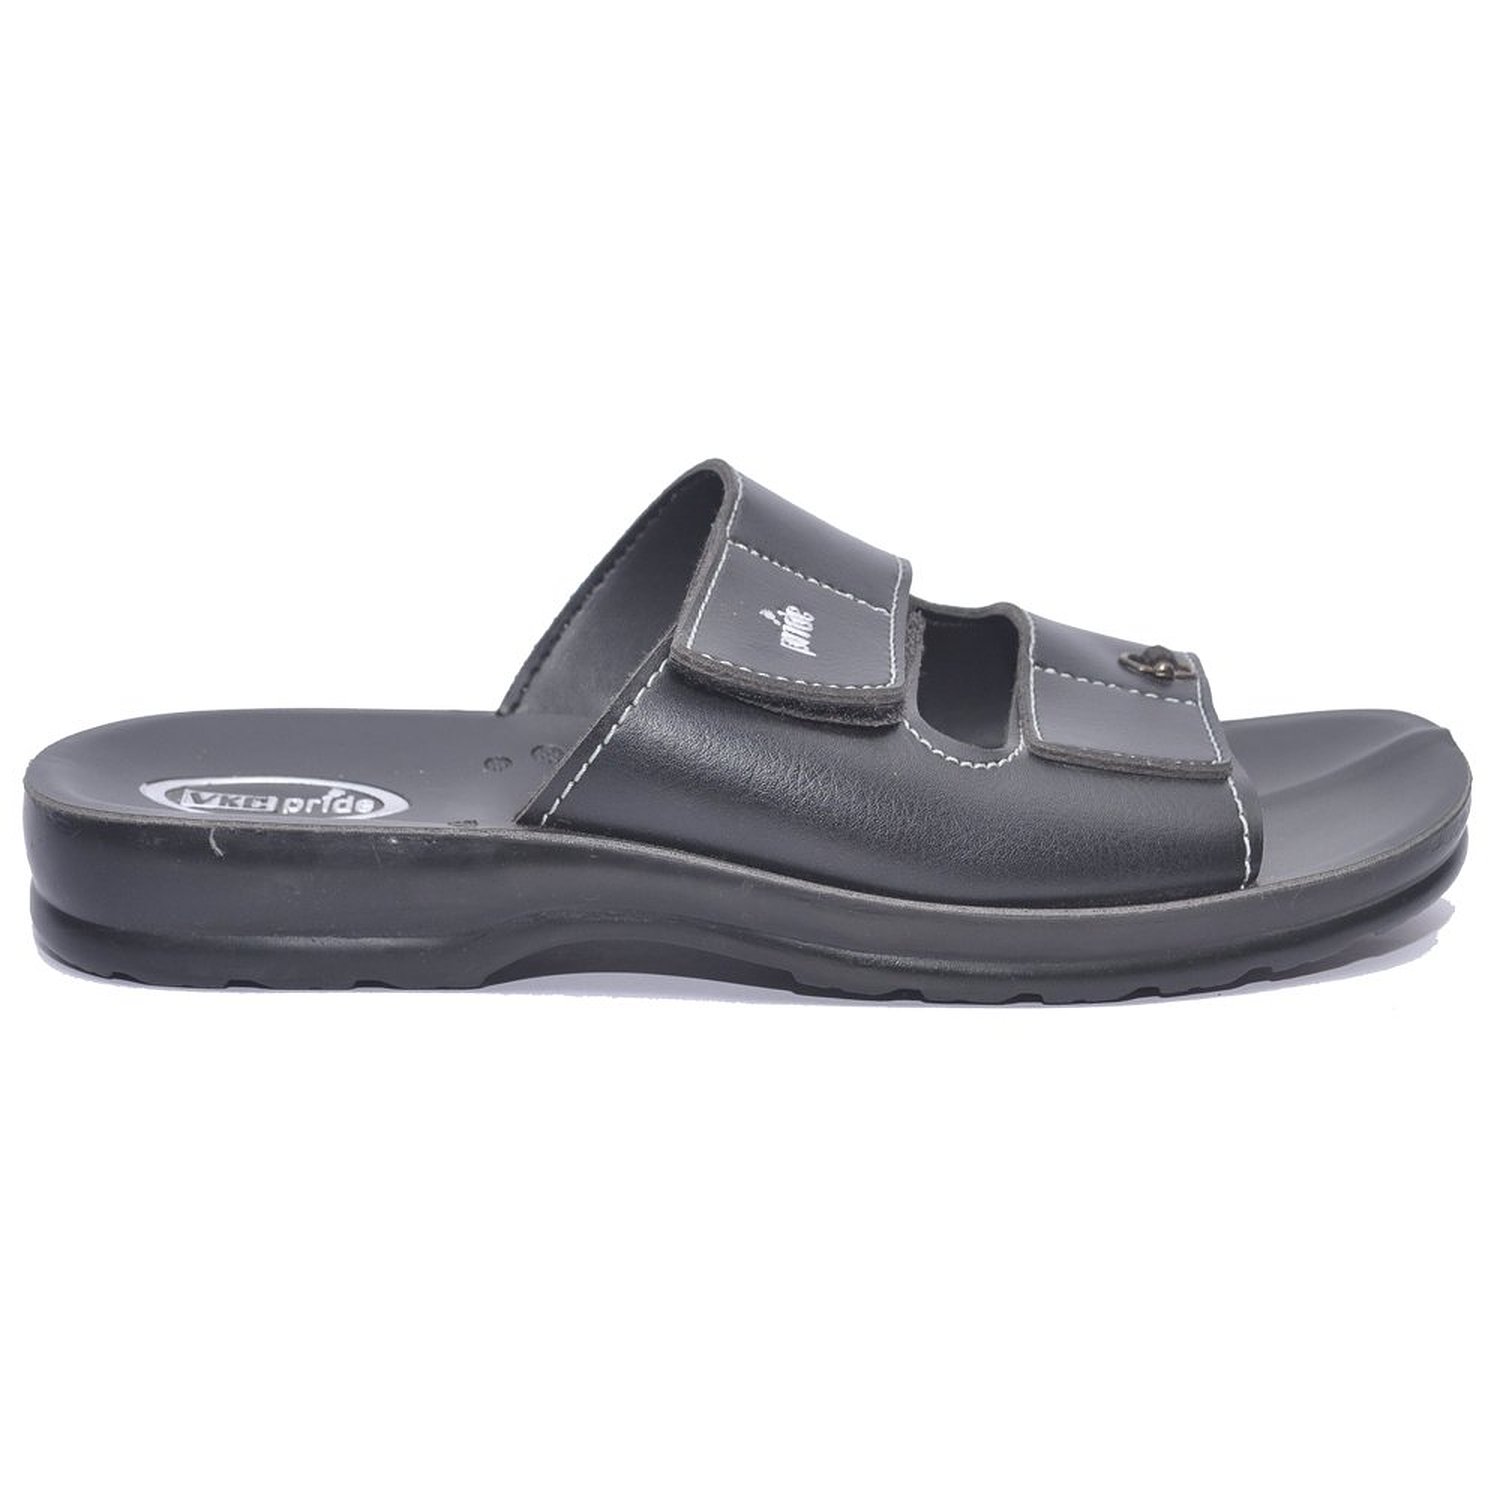 VKC Pride Black Slippers for Men - 1031: Buy Online from ShopClues.com